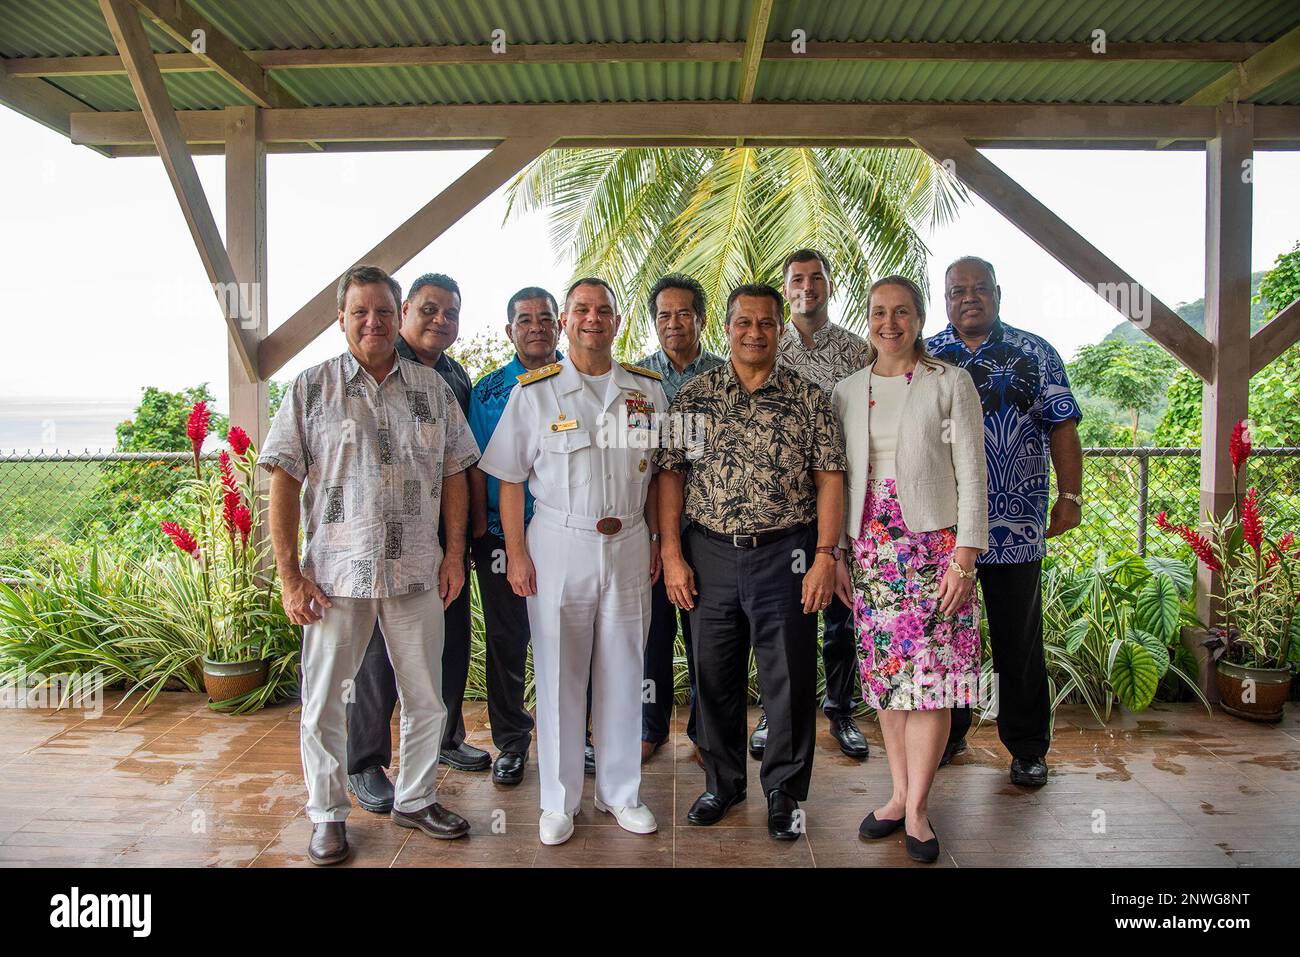 POHNPEI, Stati Federati di Micronesia (17 febbraio 2023) - posteriore ADM. Benjamin Nicholson, comandante della Joint Region Marianas e Stati Uniti Ufficiale militare indoPacifico per Guam, Commonwealth delle Isole Marianne Settentrionali, Stati Federati di Micronesia (FSM) e Repubblica di Palau, si riunisce per una foto con il Vice Presidente della FSM Aren Palik, Stati Uniti Ambasciata Kolonia Chargé d’Affaires Alissa Bibb, e leadership da tutto il FSM. Durante l'incontro, i leader hanno discusso l'importanza della partnership nella regione e dei piani e progetti futuri per mantenere un Indo-Pacific libero e aperto. Foto Stock